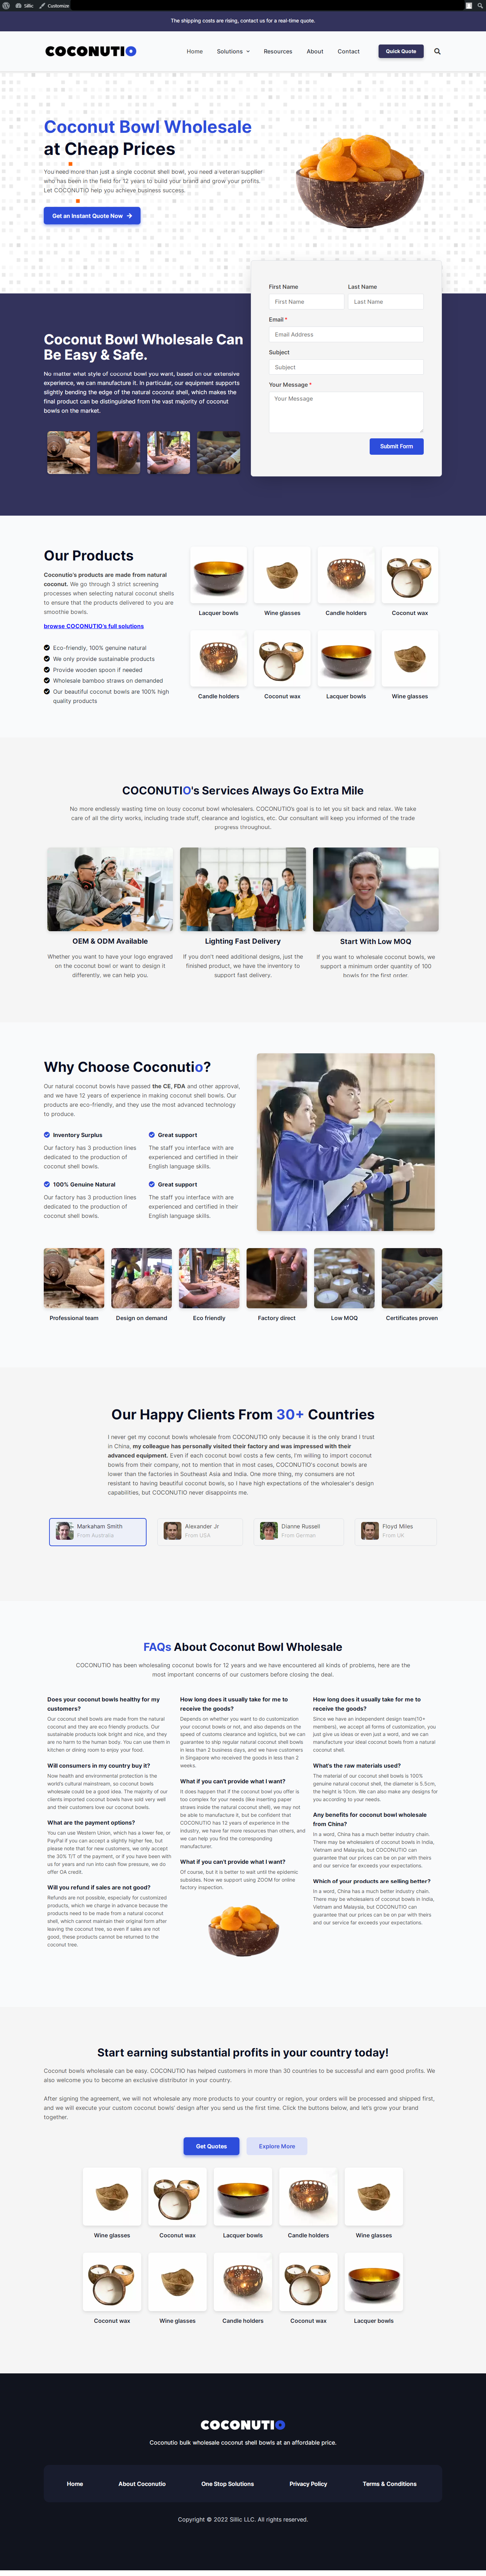 I'll Create, Clone & Redesign SEO-Friendly Wordpress Website